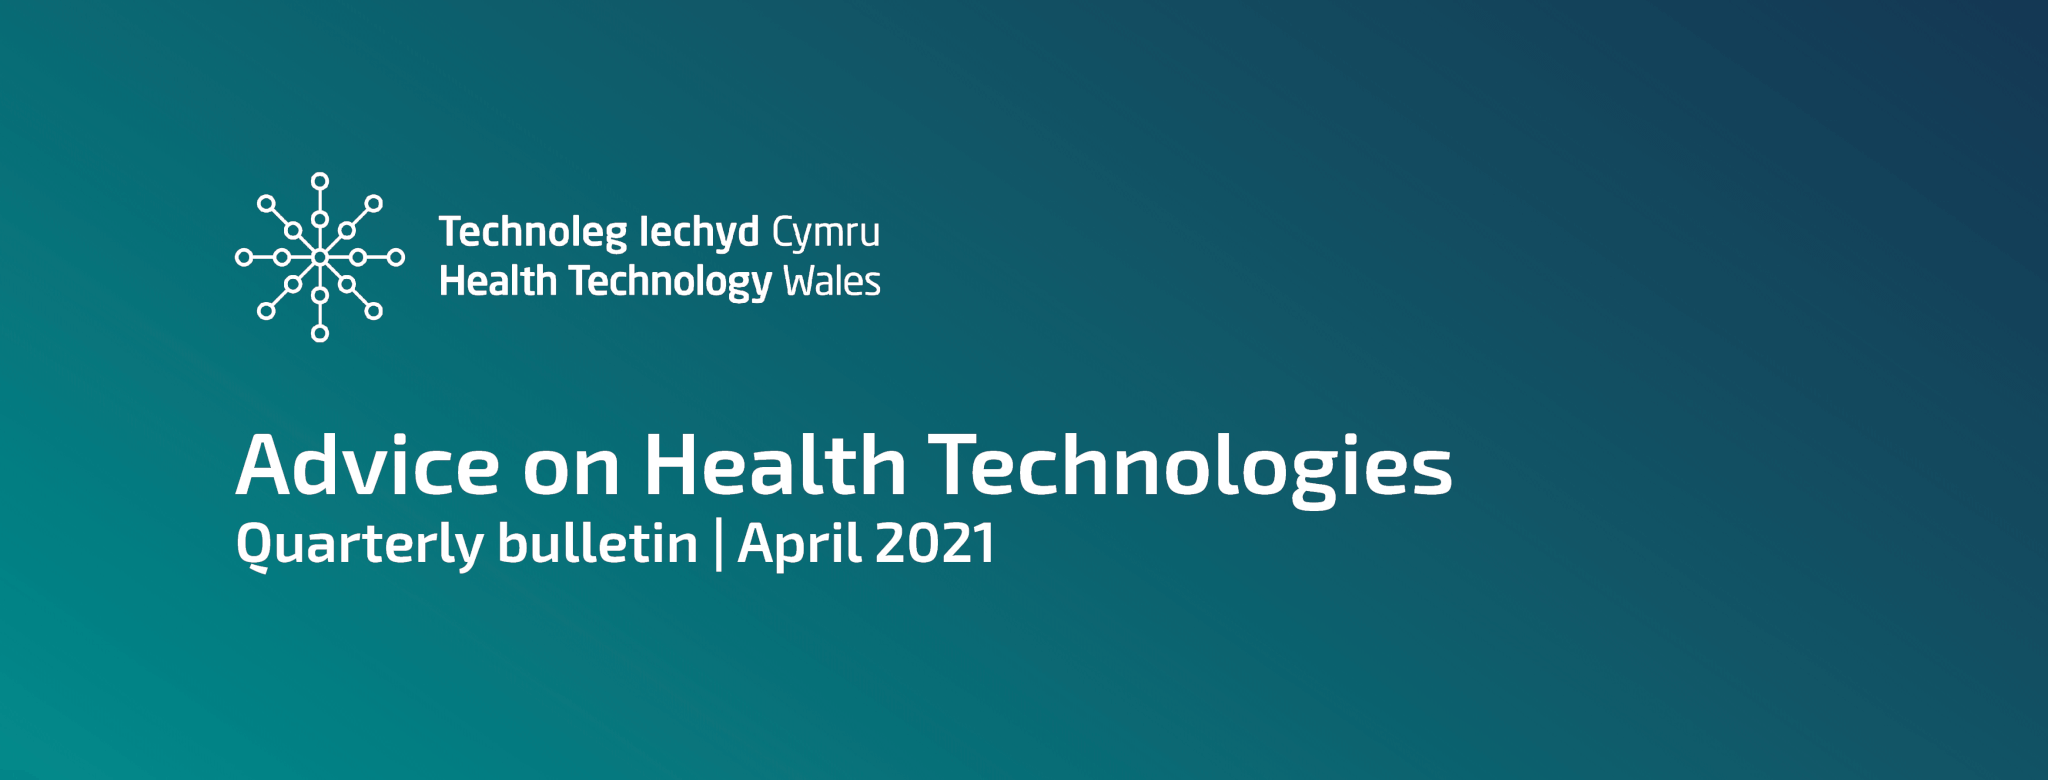 April 2021 Advice on Health Technologies bulletin